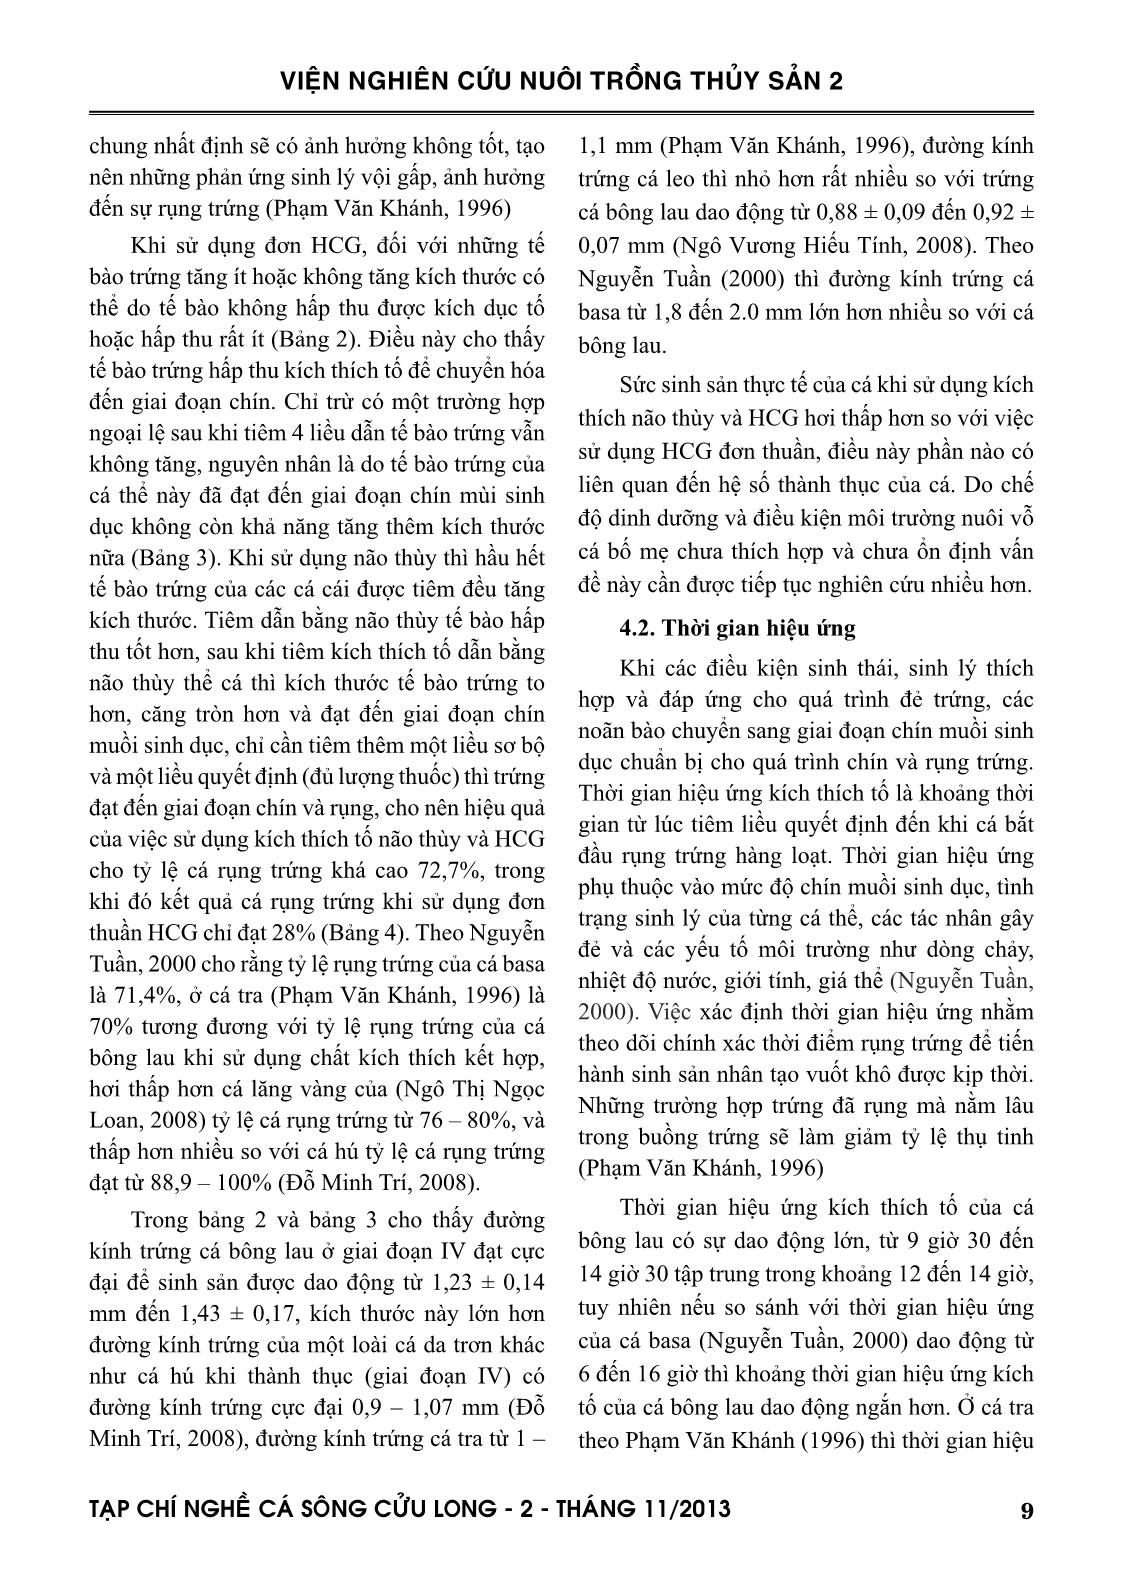 Tạp chí Nghề cá sông Cửu Long - Số 02/2013 trang 9